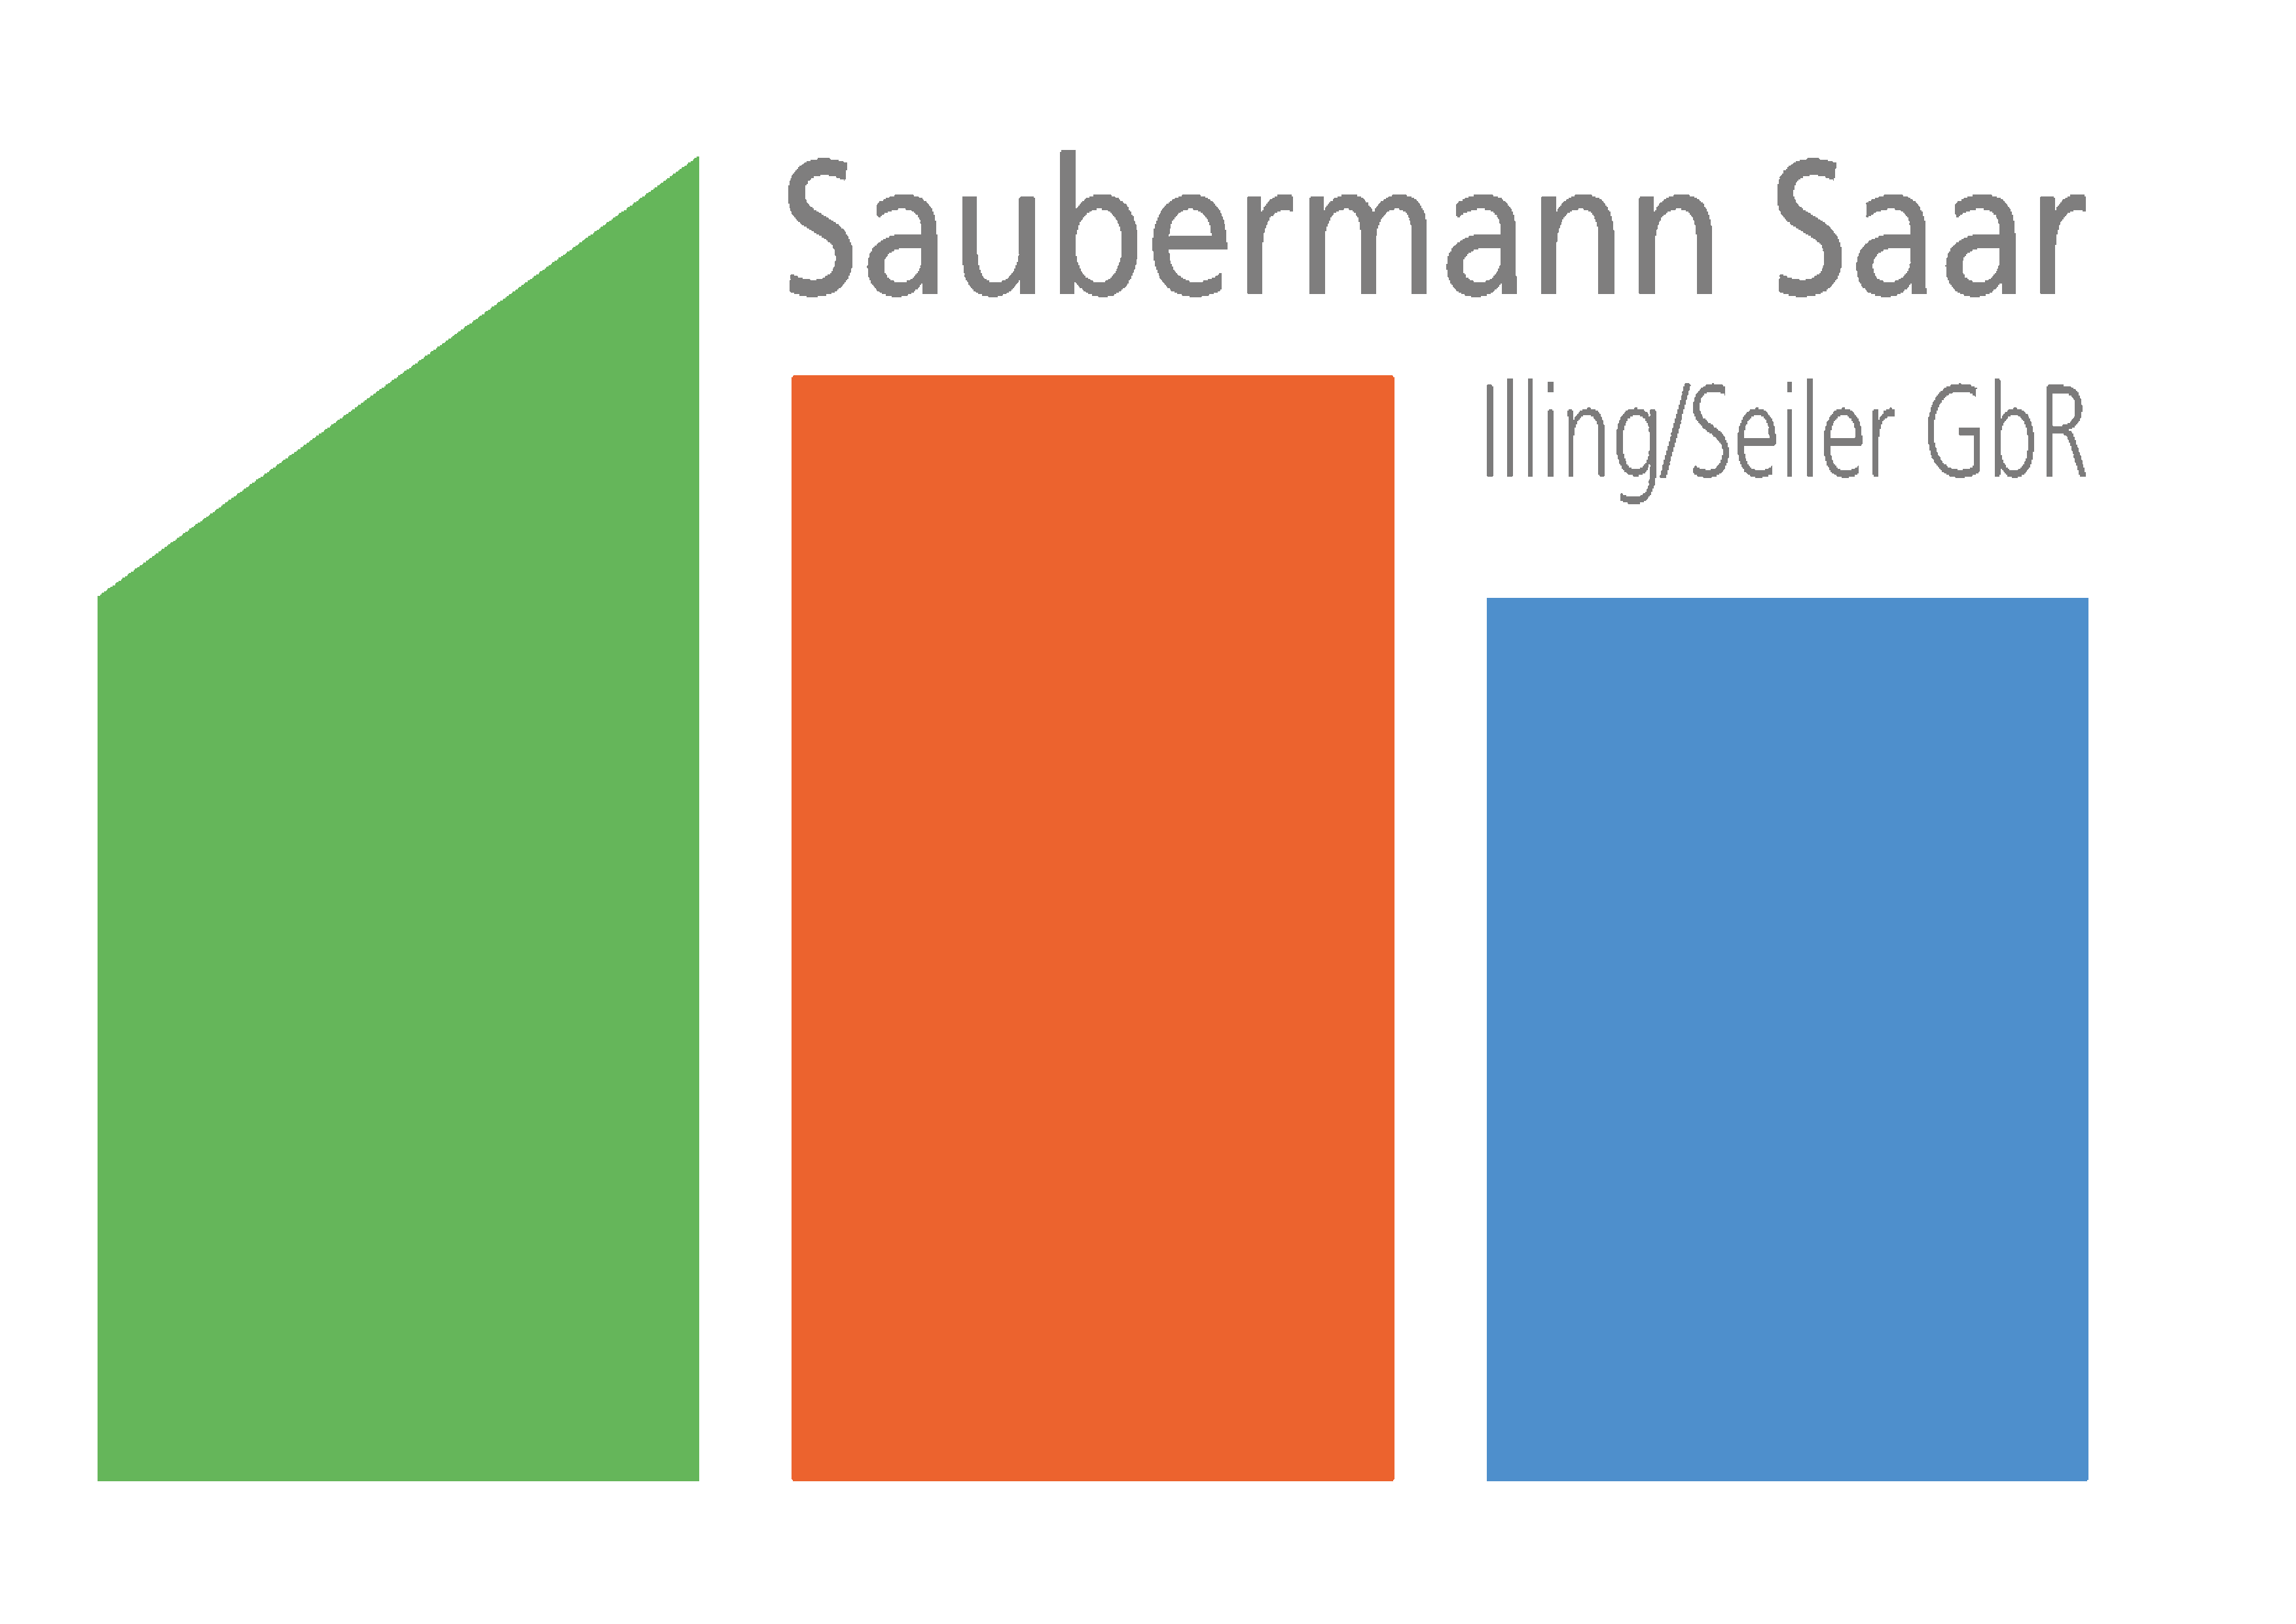 Saubermann Saar